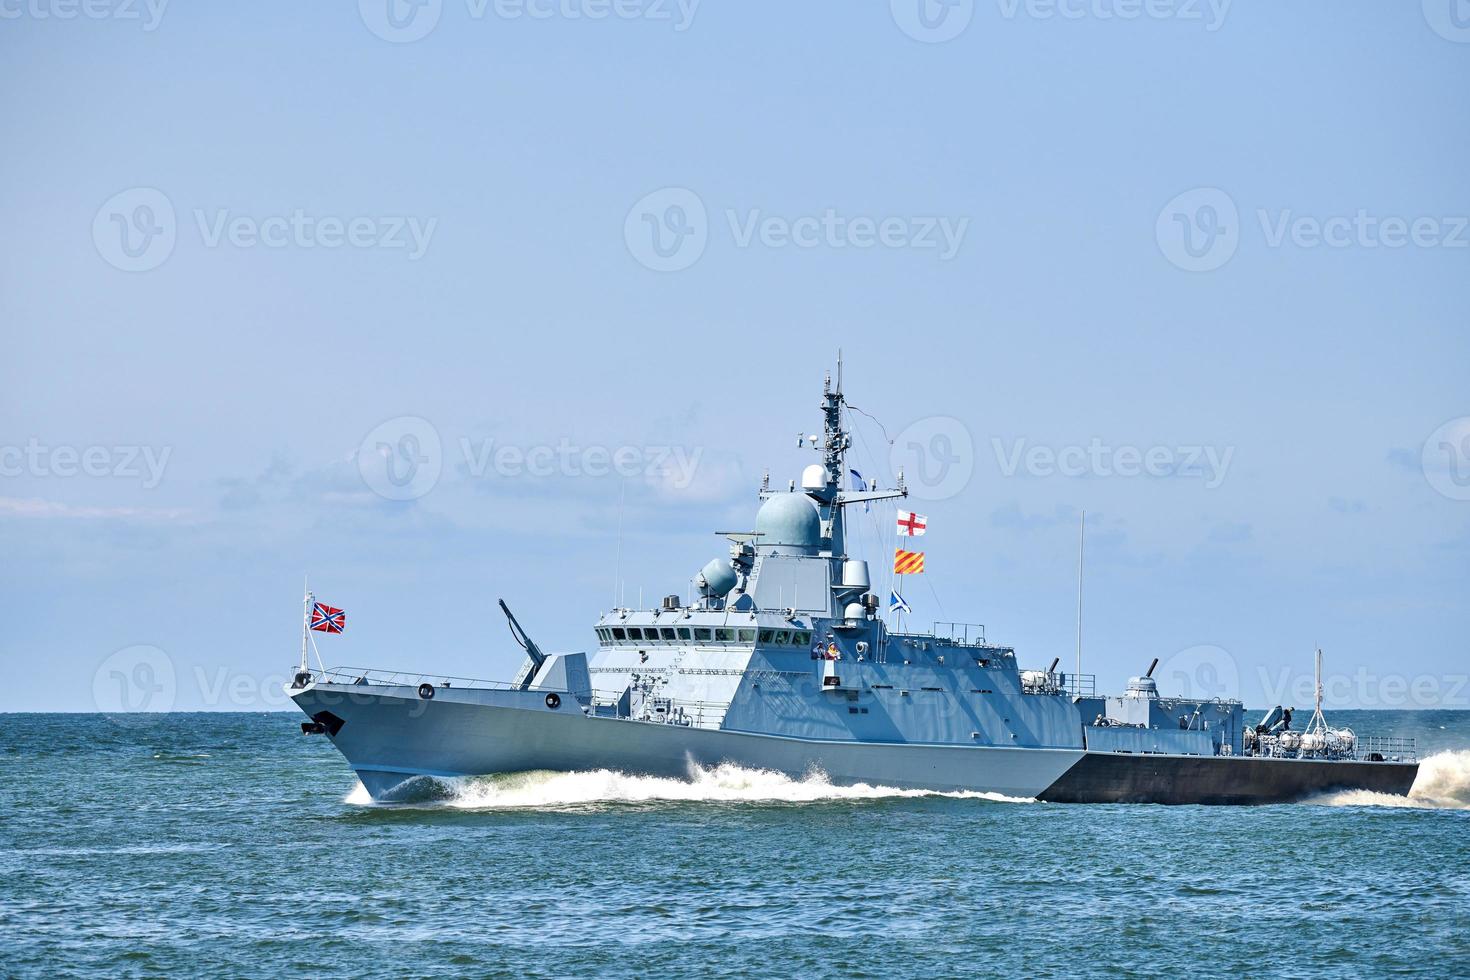 raket boot gedurende marine- opdrachten en optocht, begeleid raket torpedojager in Baltisch zee, oorlogsschip foto